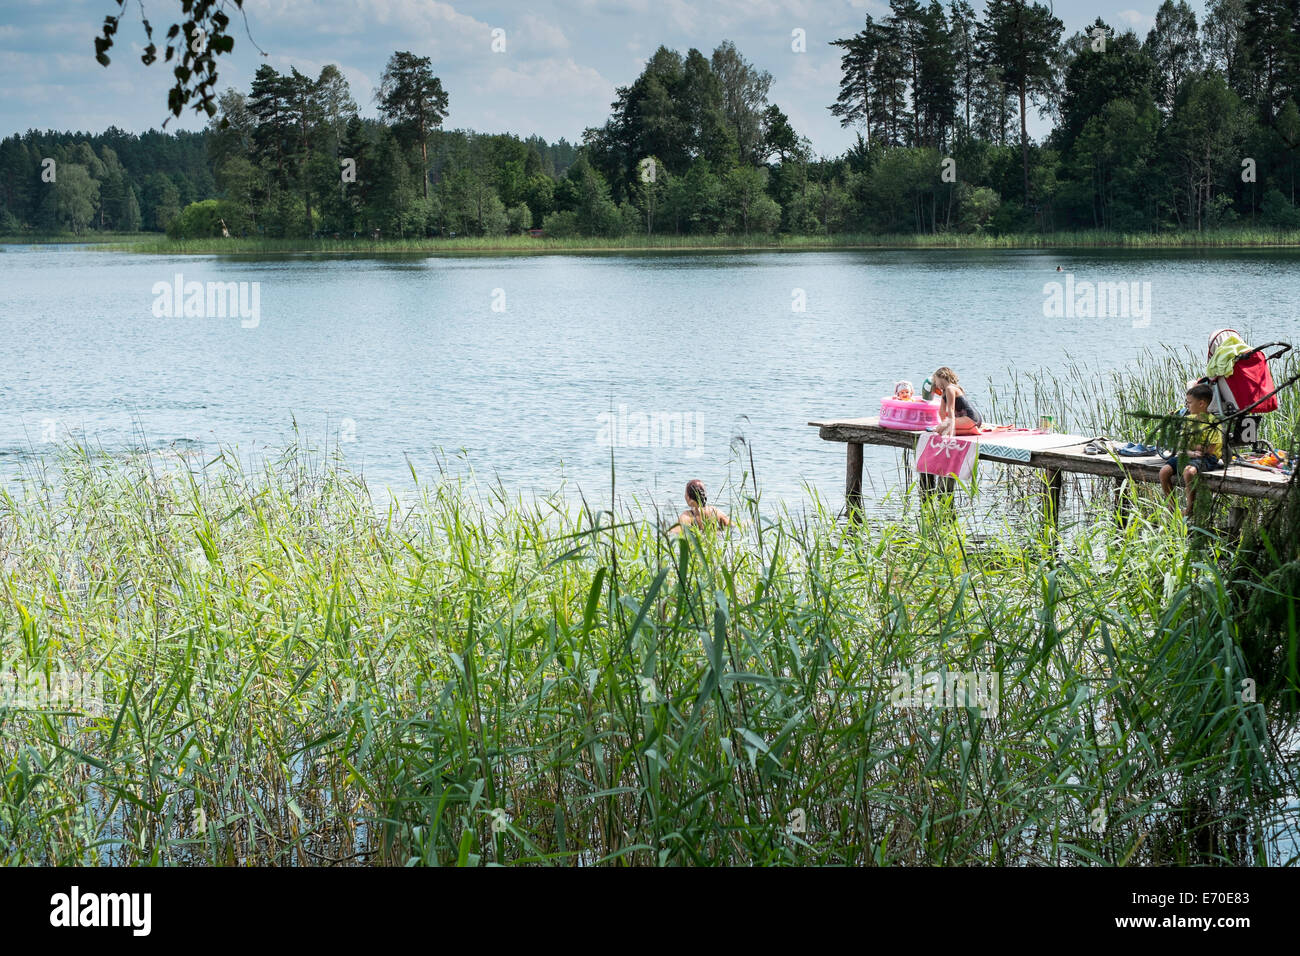 Familie genießen ein erfrischendes Bad, Zelwa See Giby, Polen Stockfoto